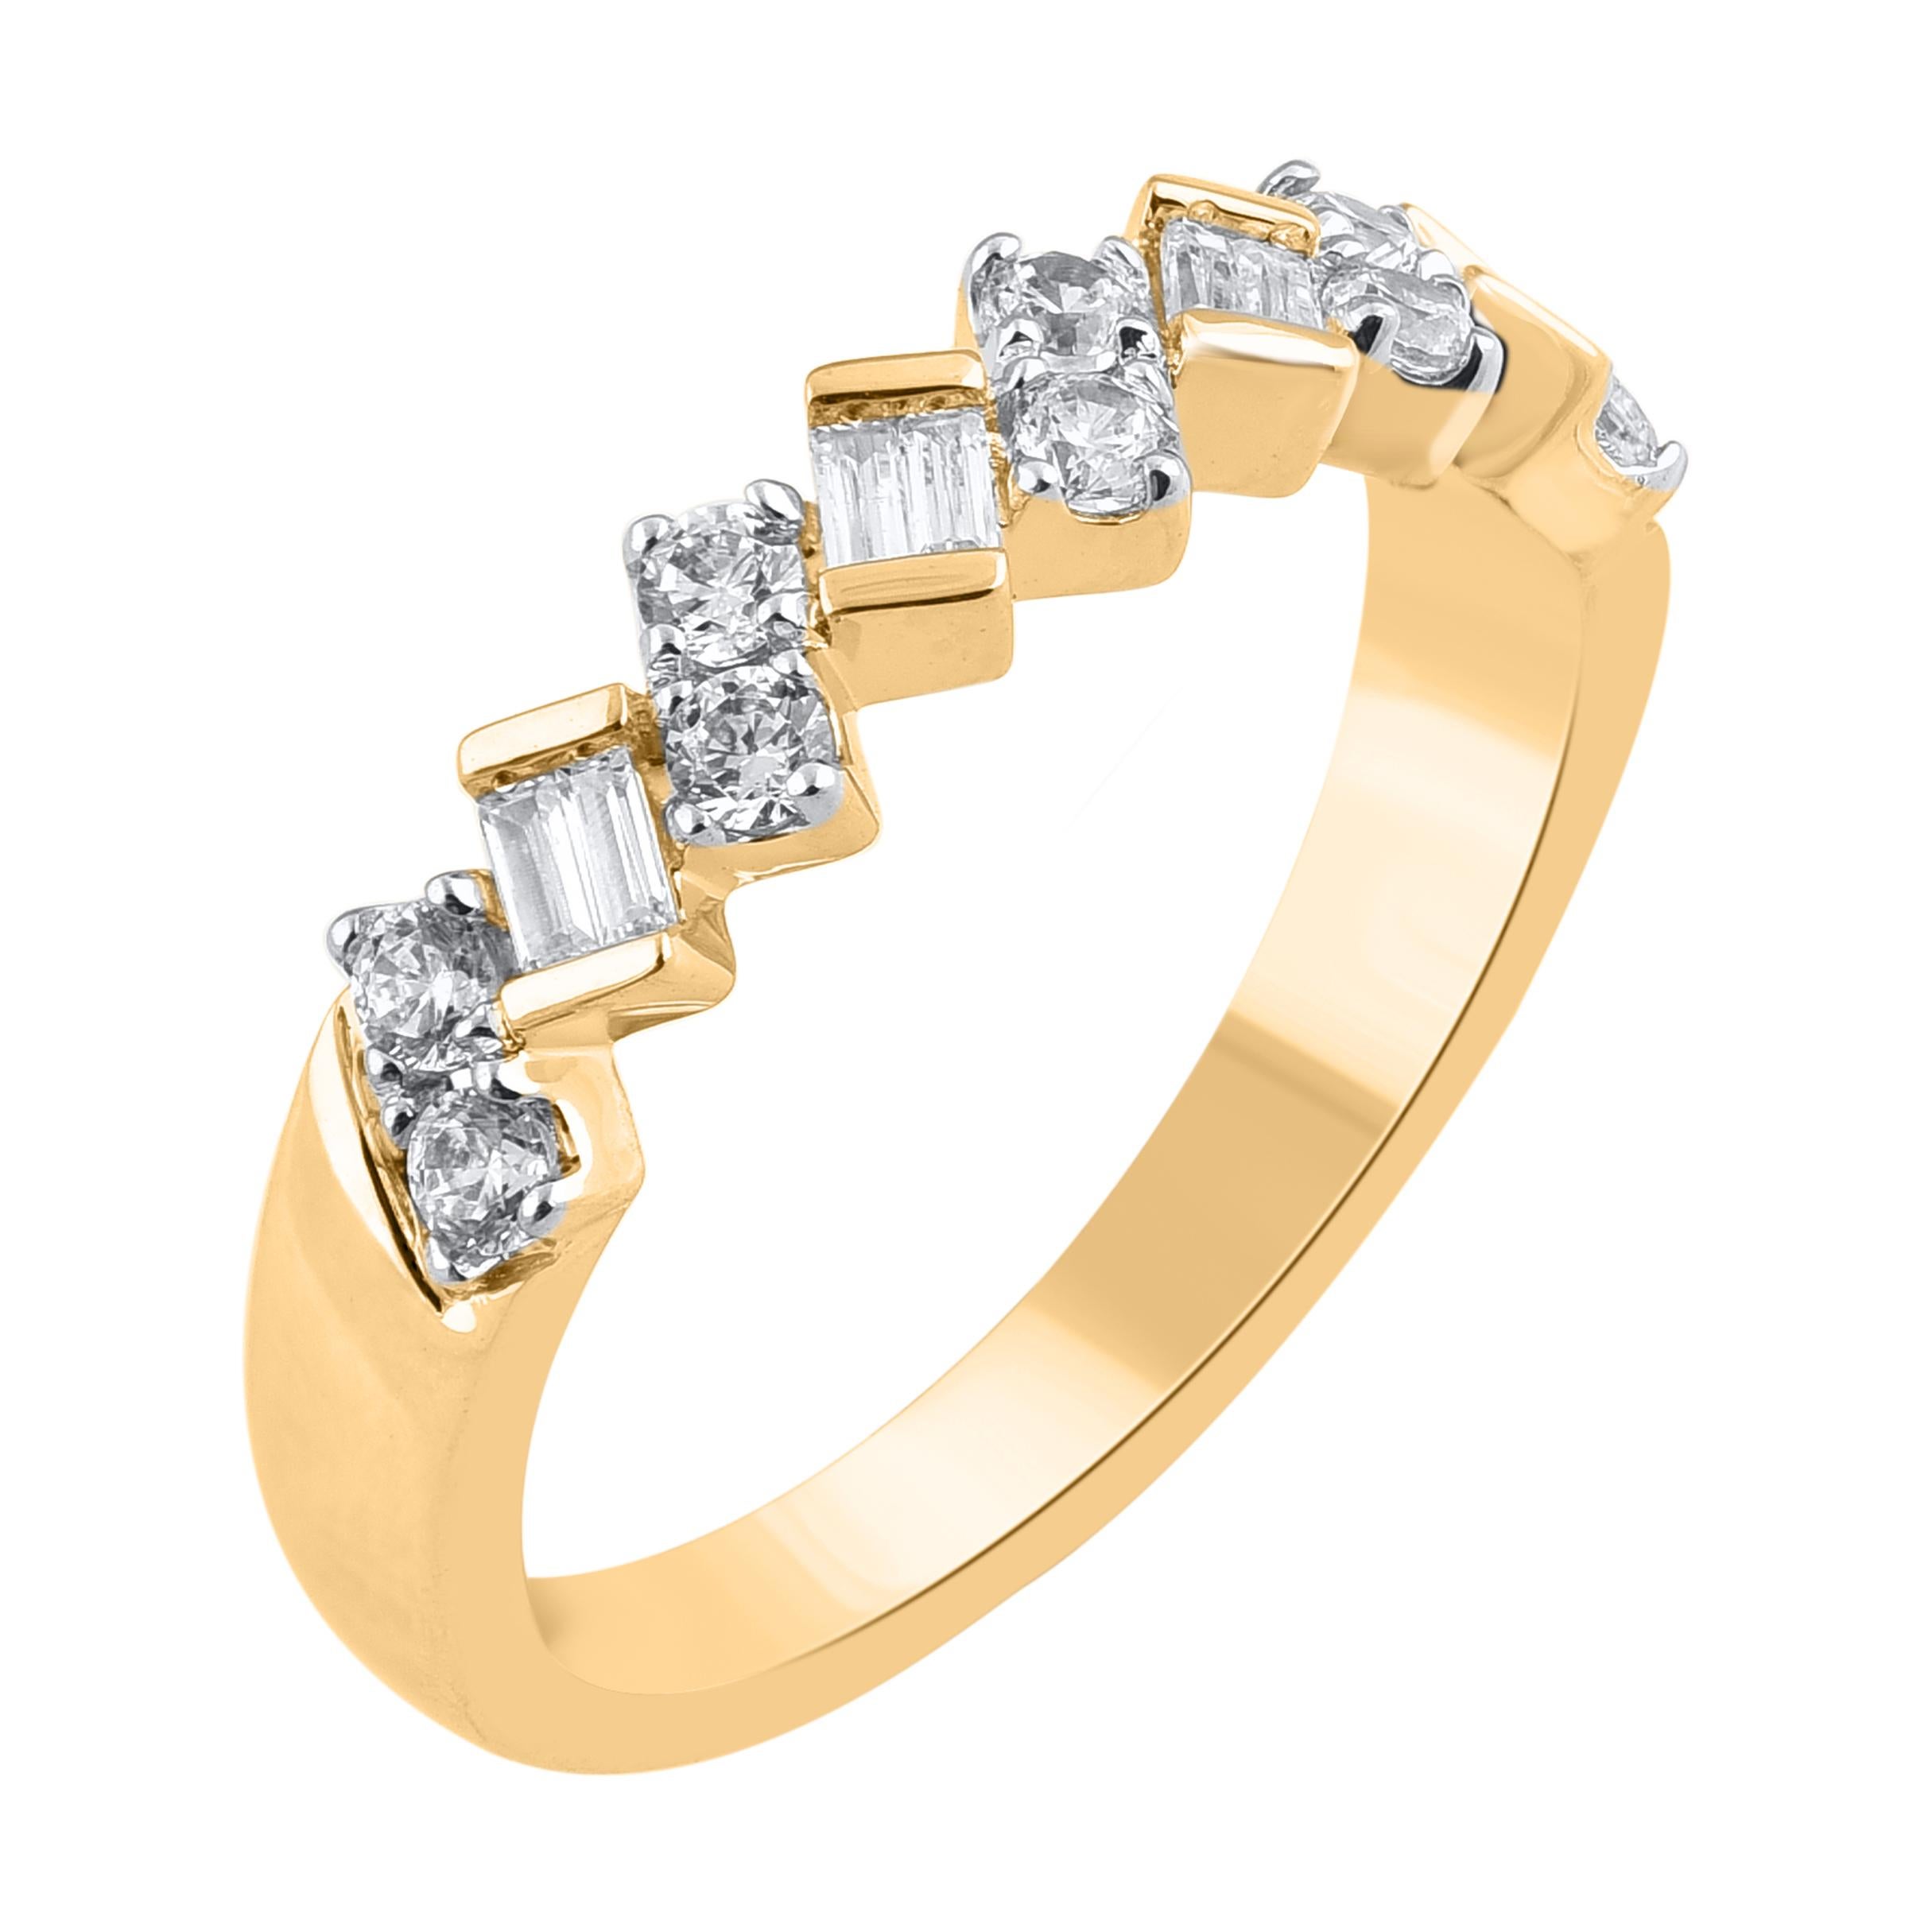 Verleihen Sie Ihrer Schmucksammlung einen Hauch von Glamour mit diesem diamantenen Verlobungsring. Dieser wunderschöne Ring mit schimmernden Diamanten im Brillant- und Baguetteschliff in Zackenfassung ist aus 14 Karat Gelbgold gefertigt. Der Ring